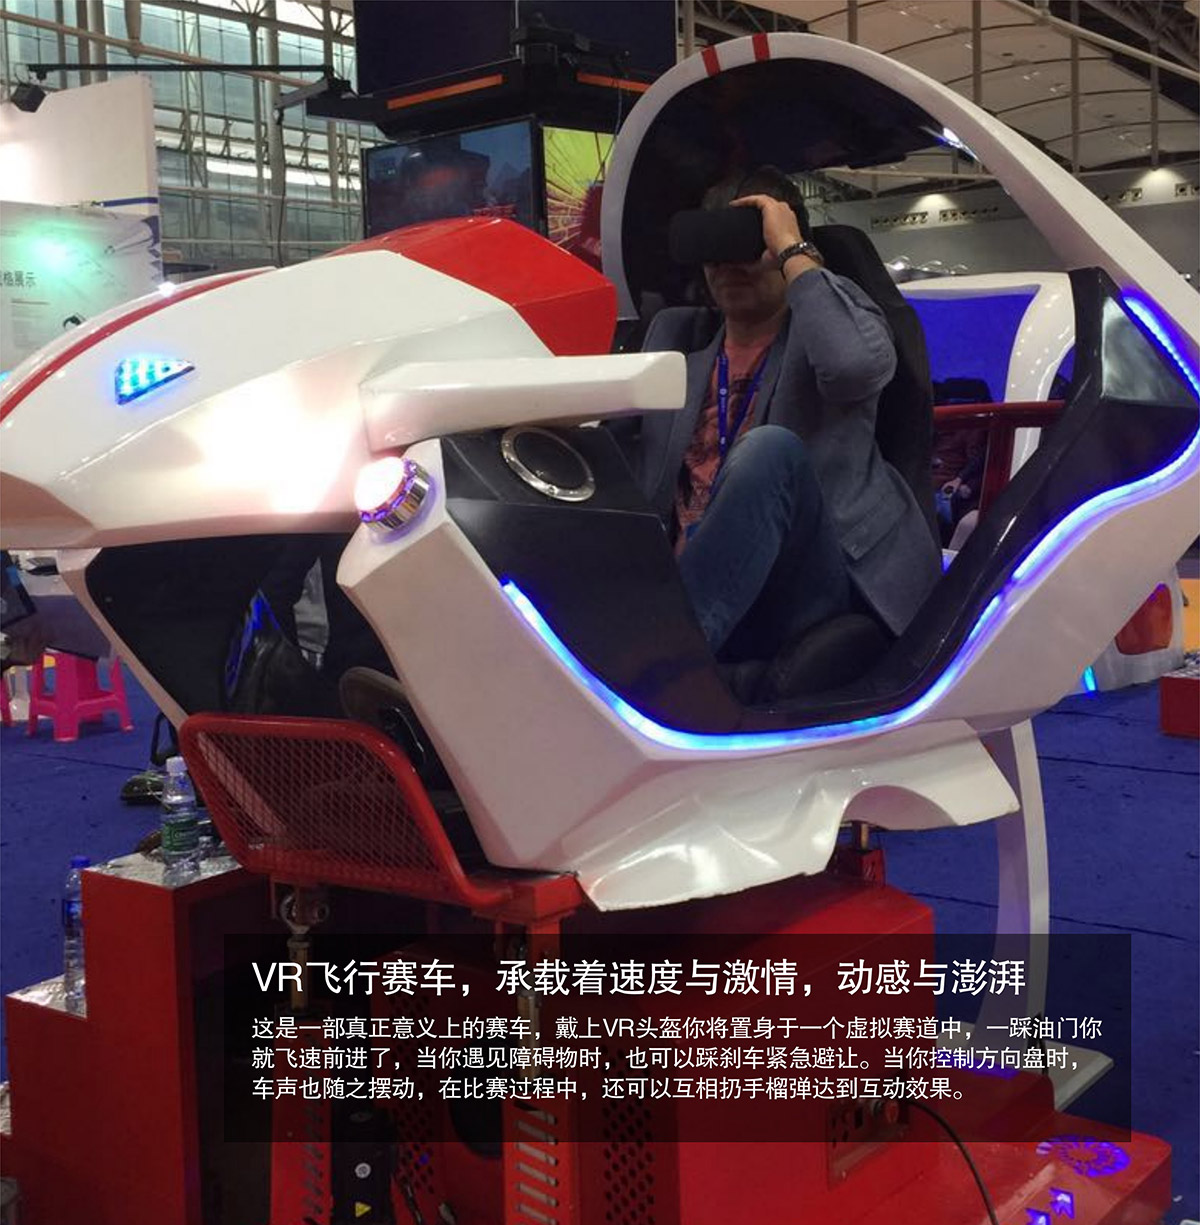 VR飞行虚拟赛车速度与激情动感澎湃.jpg